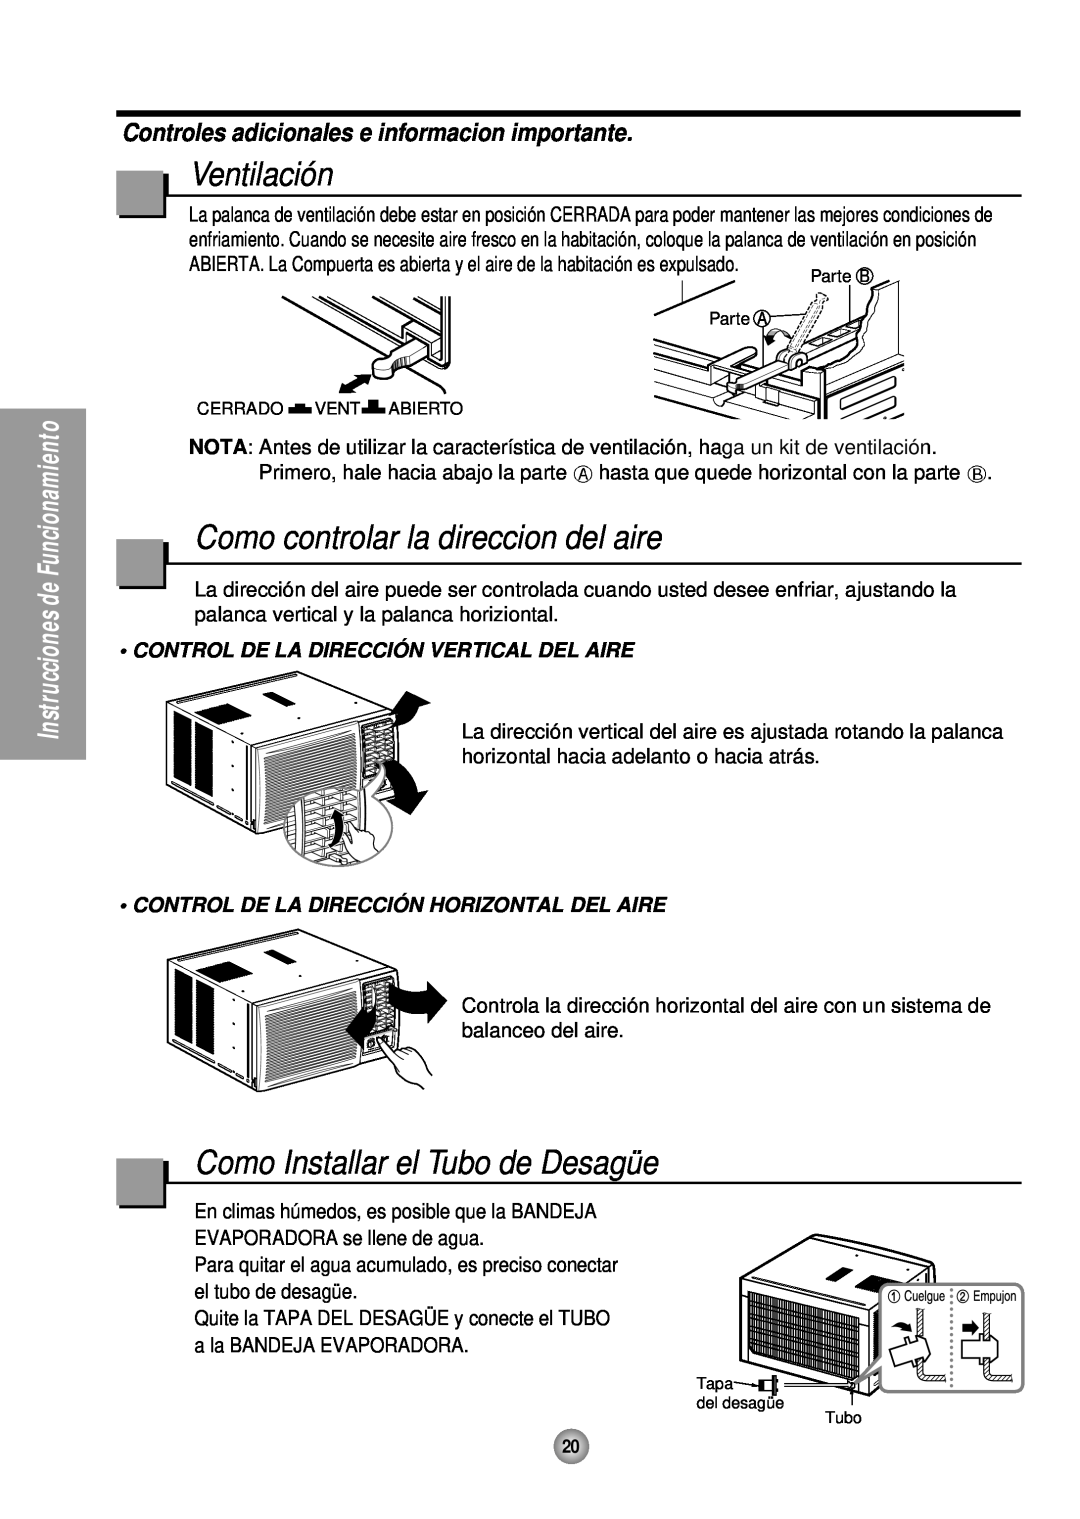 Panasonic HQ-2243TH manual Ventilación, Como controlar la direccion del aire, Como Installar el Tubo de Desagüe 